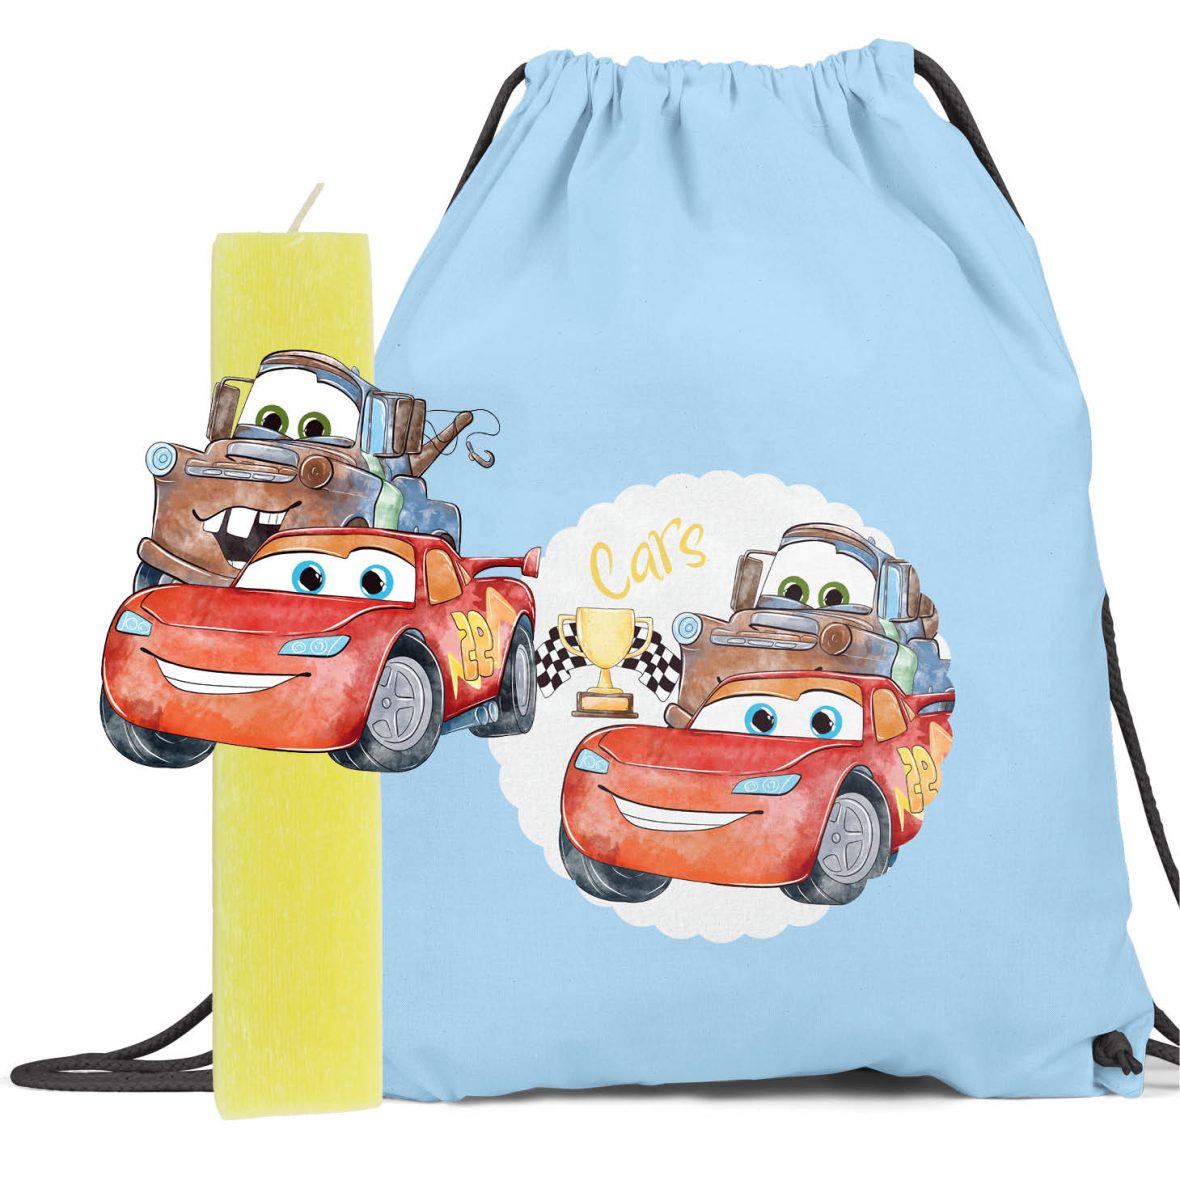 Λαμπάδα με ξύλινη φιγούρα & backpack “Cars”